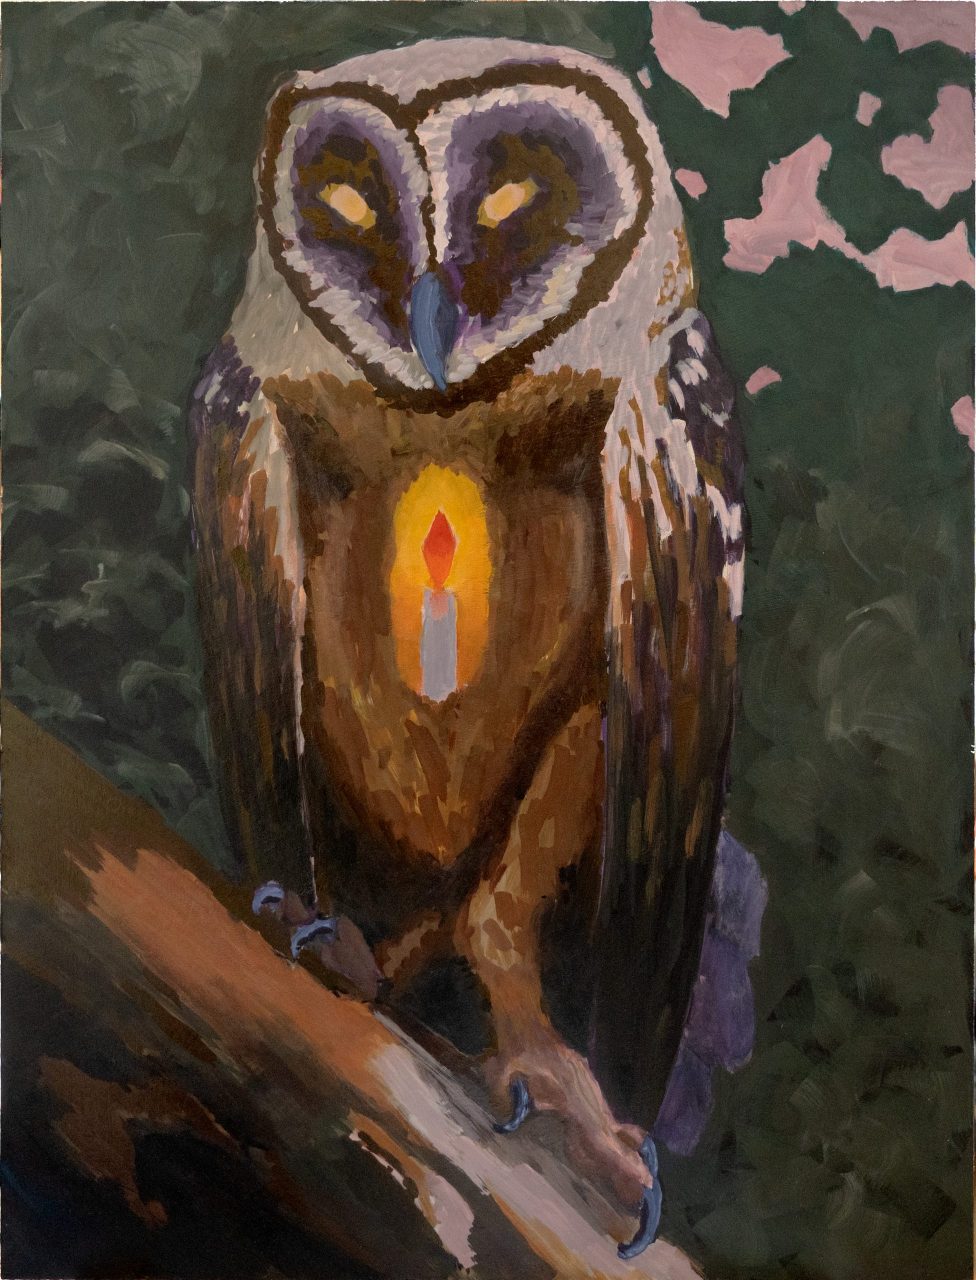 The Lantern Owl